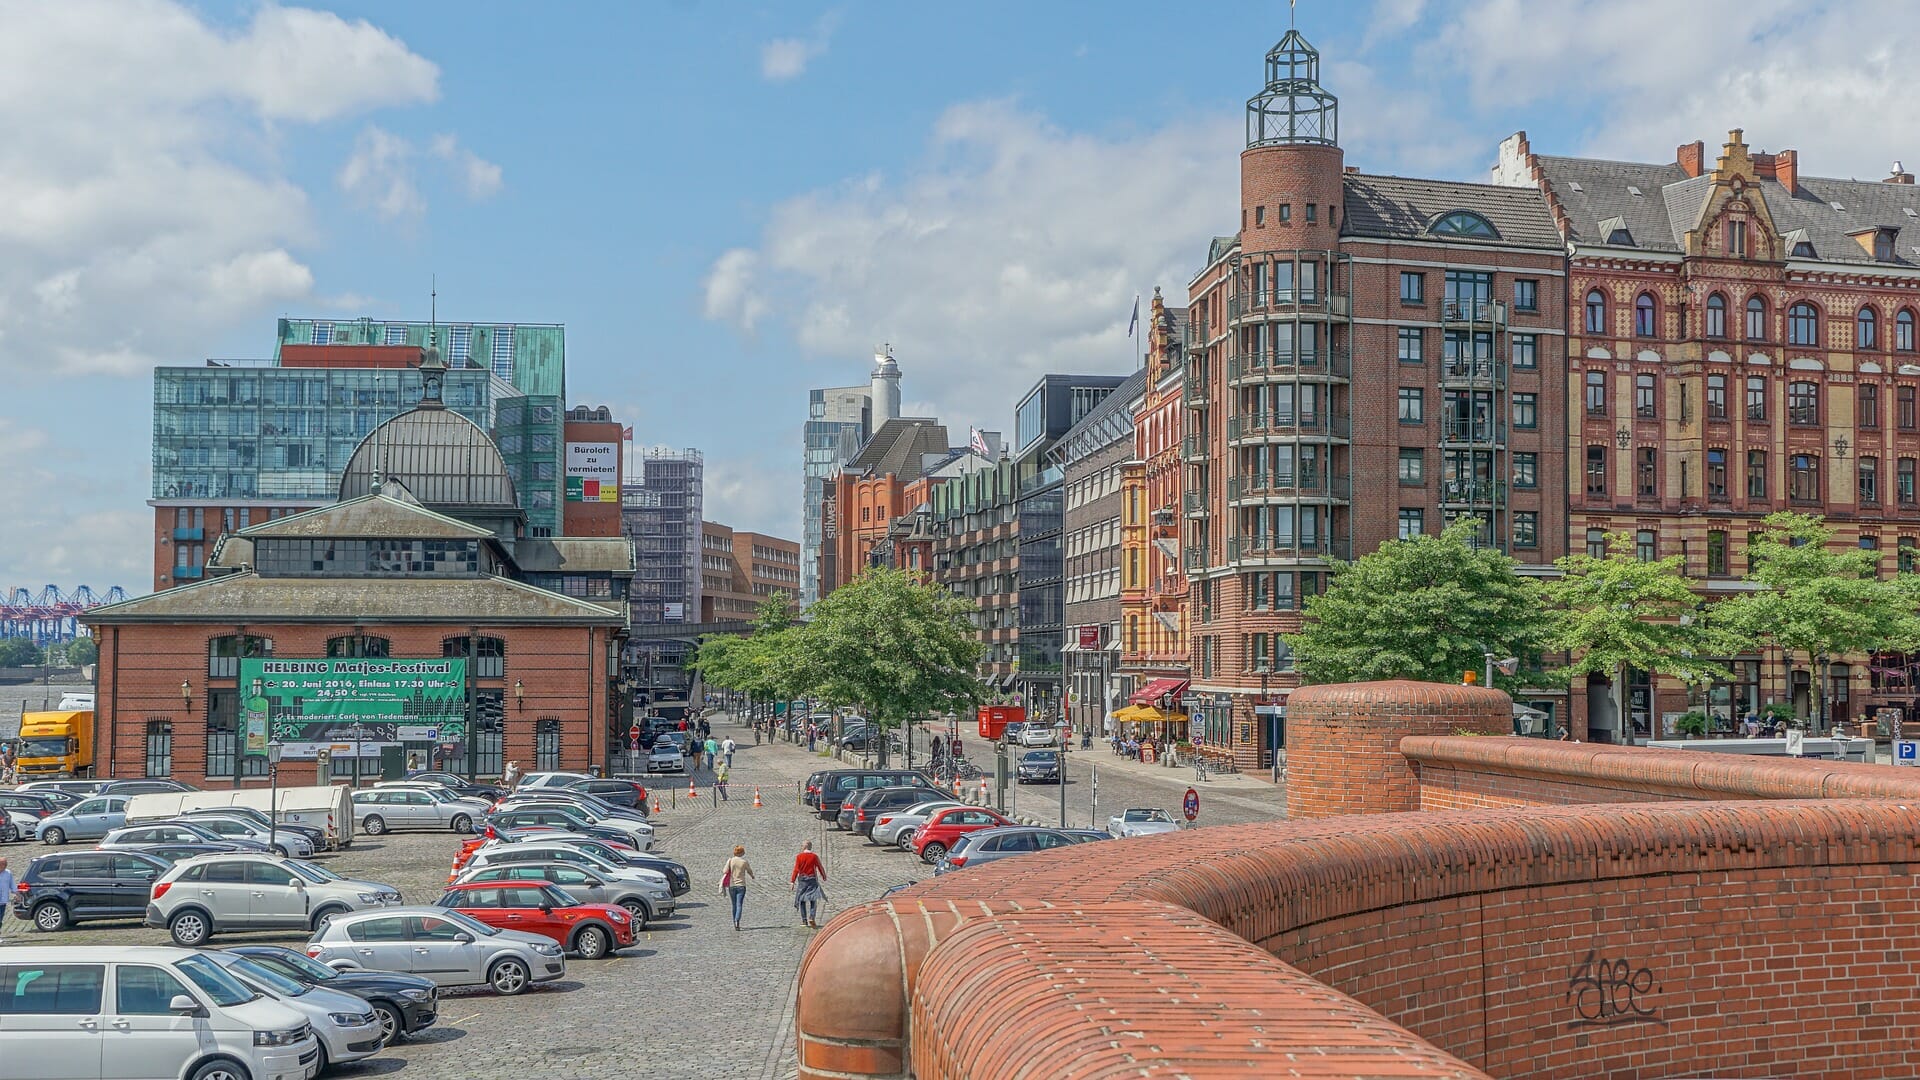 Das ist ein Bild von Hamburg. Hamburg ist die Stadt in der der Kurs stattfindet.